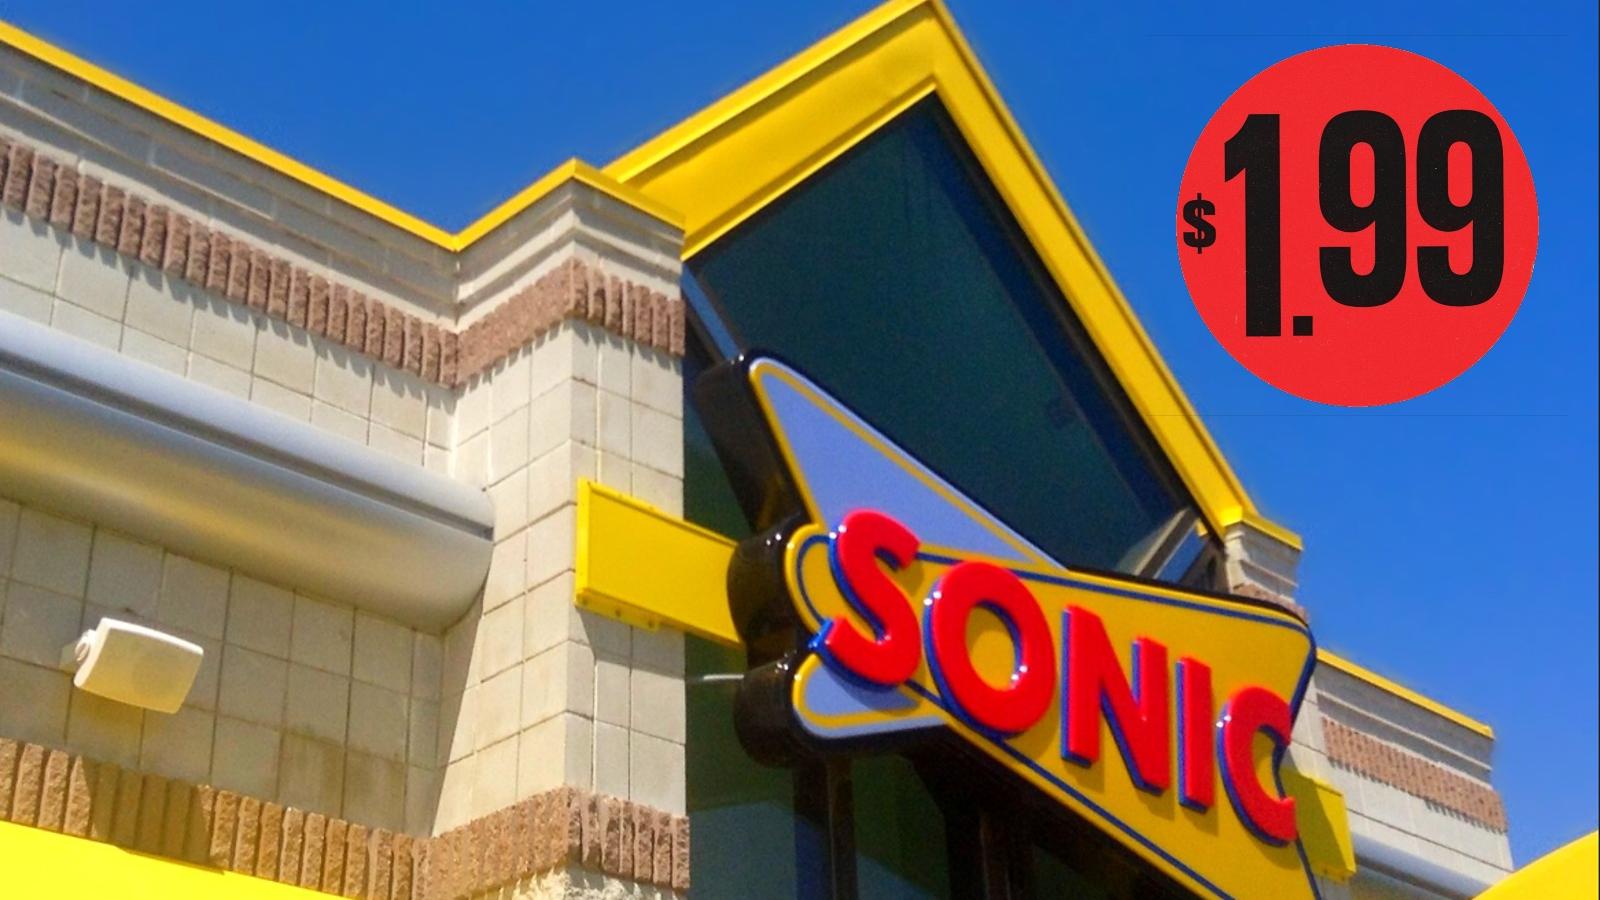 Sonic $1.99 menu